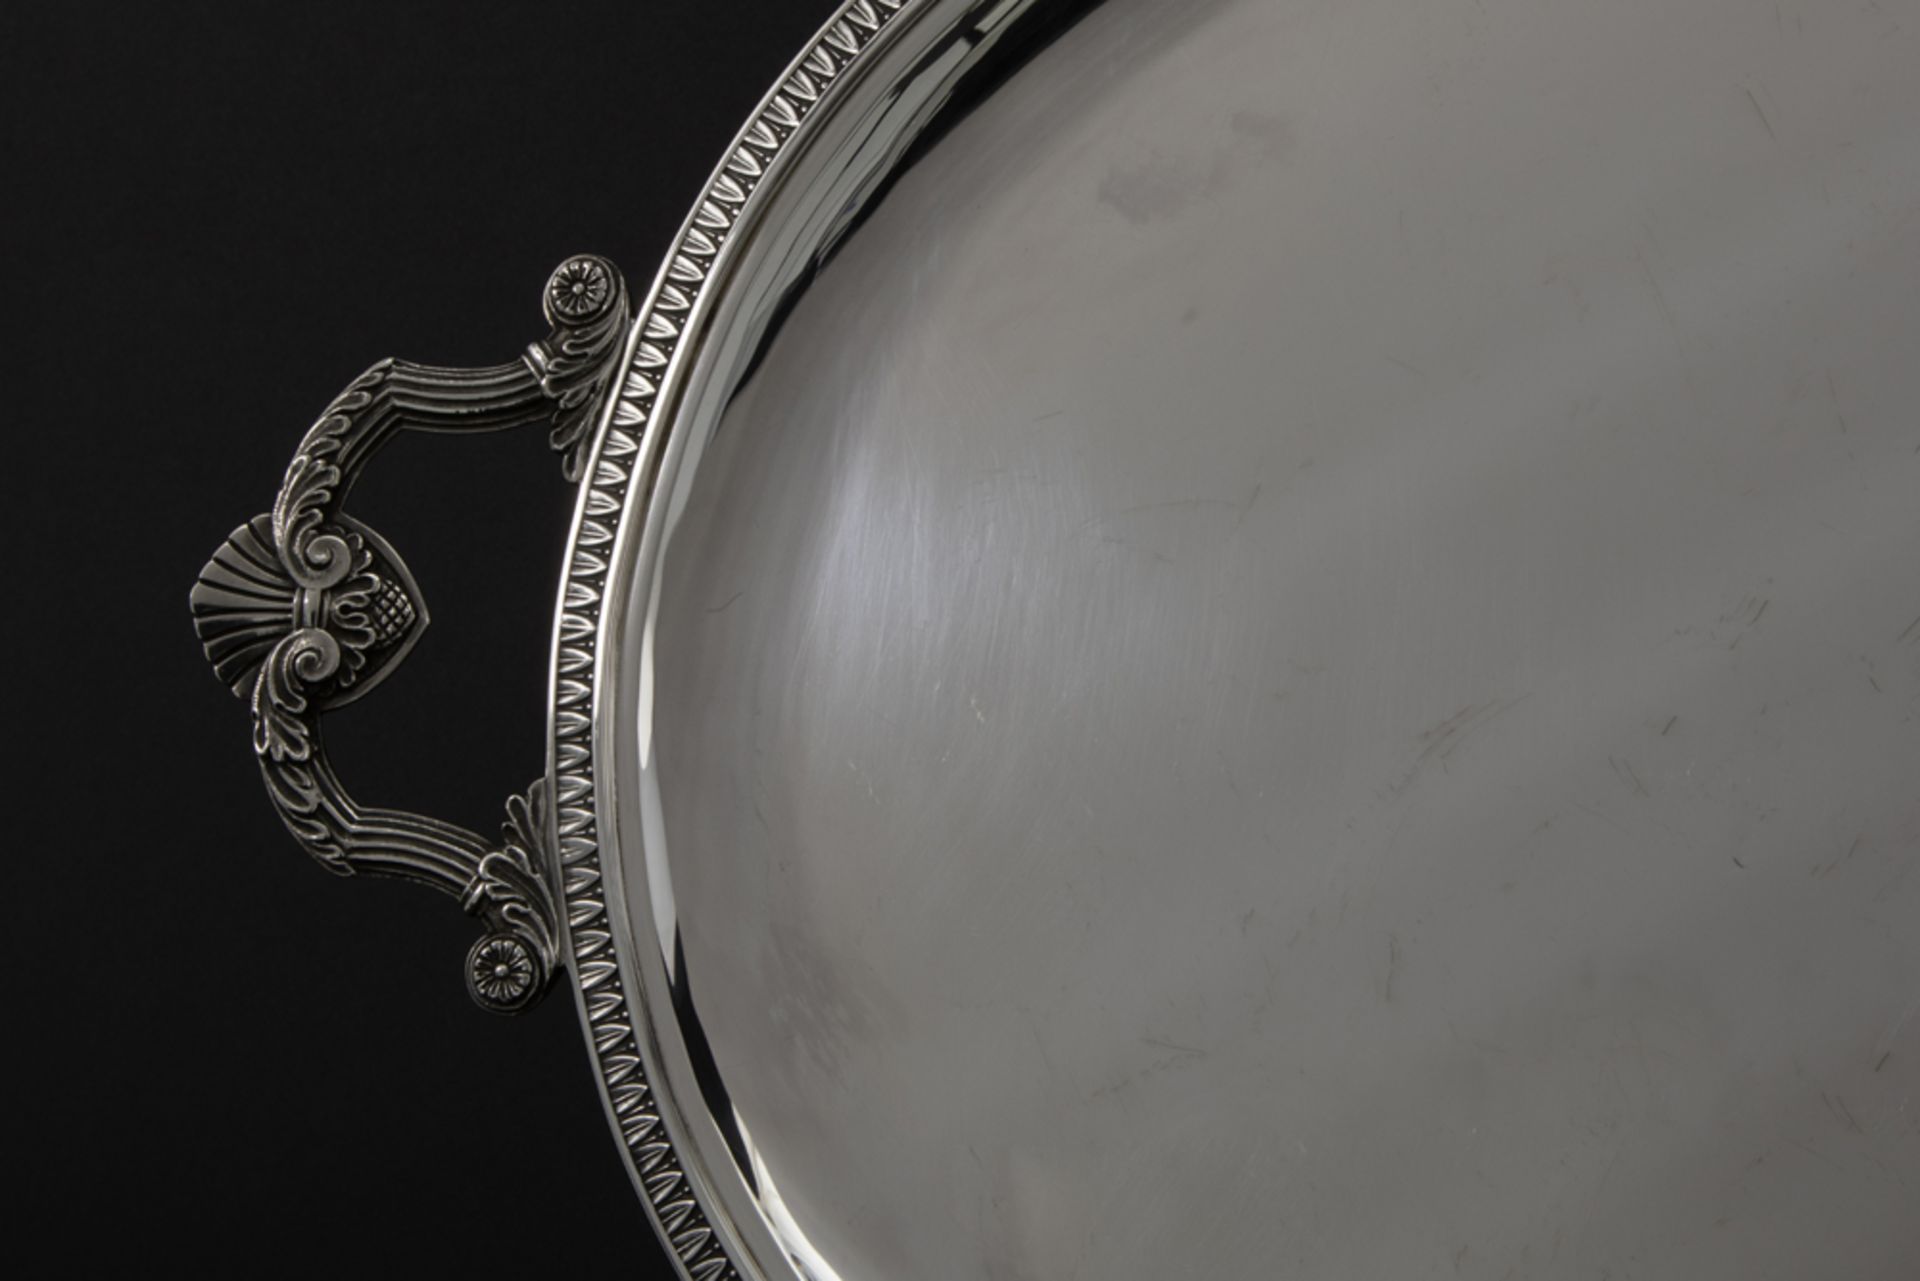 Belgian oval (dinner) tray in marked silver || Ovale Belgische dienplateau in massief zilver, - Image 2 of 4